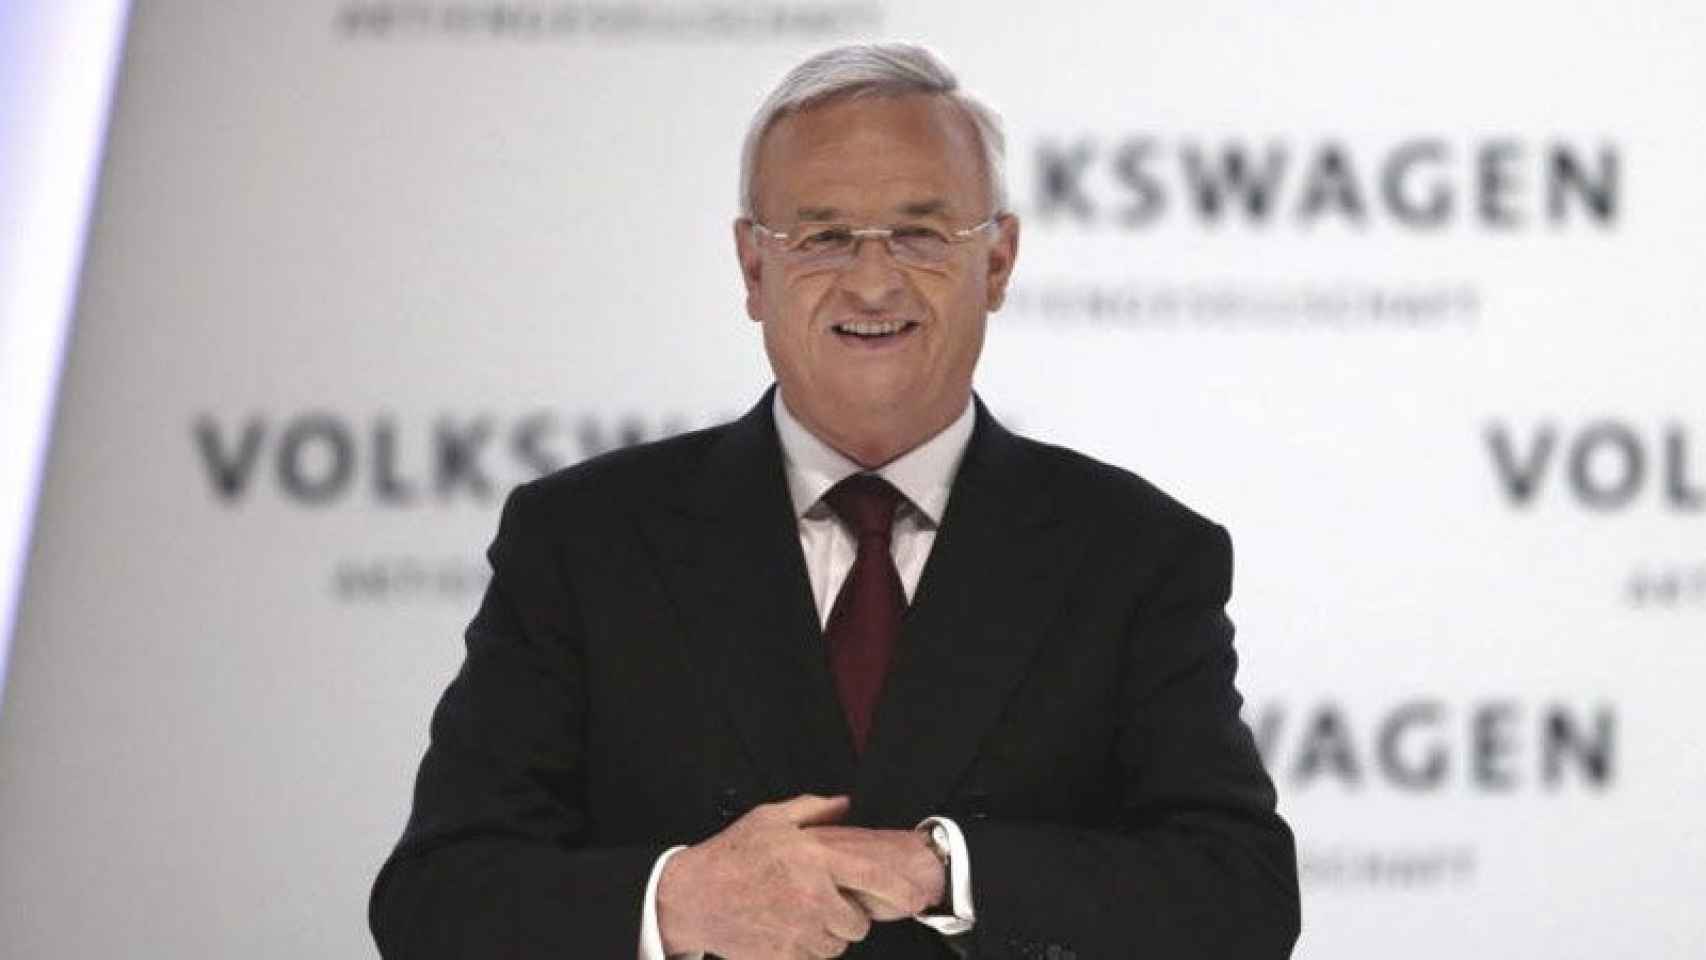 El presidente del consejo de administración y consejero delegado de Volkswagen, Martin Winterkorn